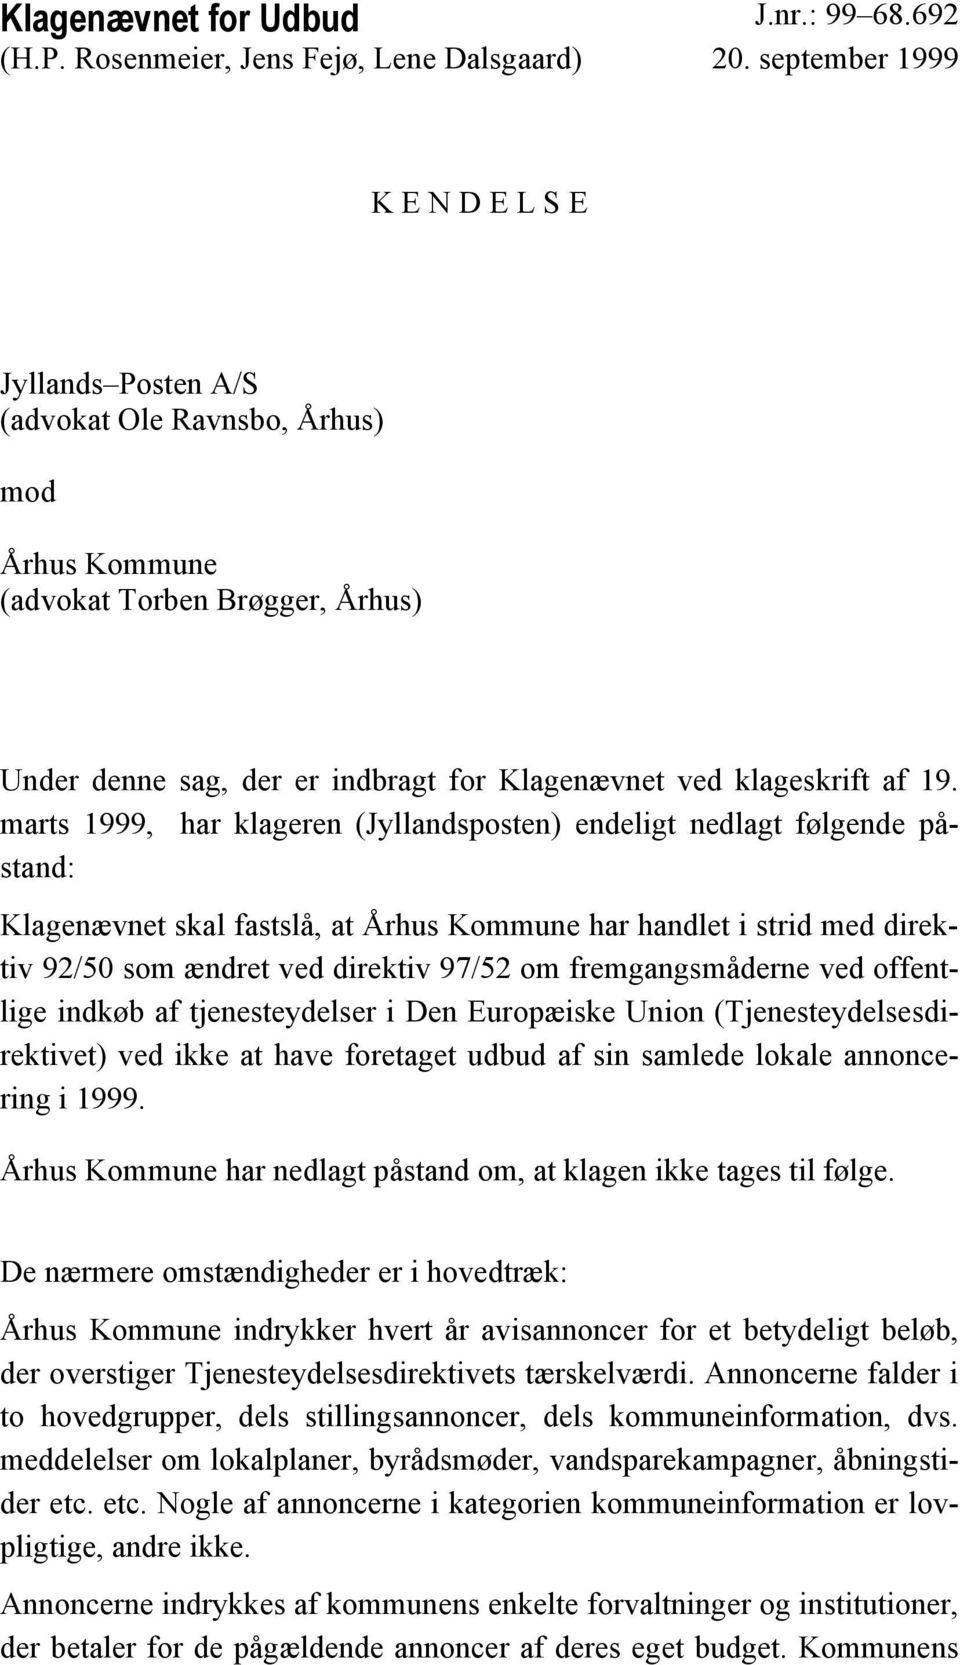 19. marts 1999, har klageren (Jyllandsposten) endeligt nedlagt følgende påstand: Klagenævnet skal fastslå, at Århus Kommune har handlet i strid med direktiv 92/50 som ændret ved direktiv 97/52 om